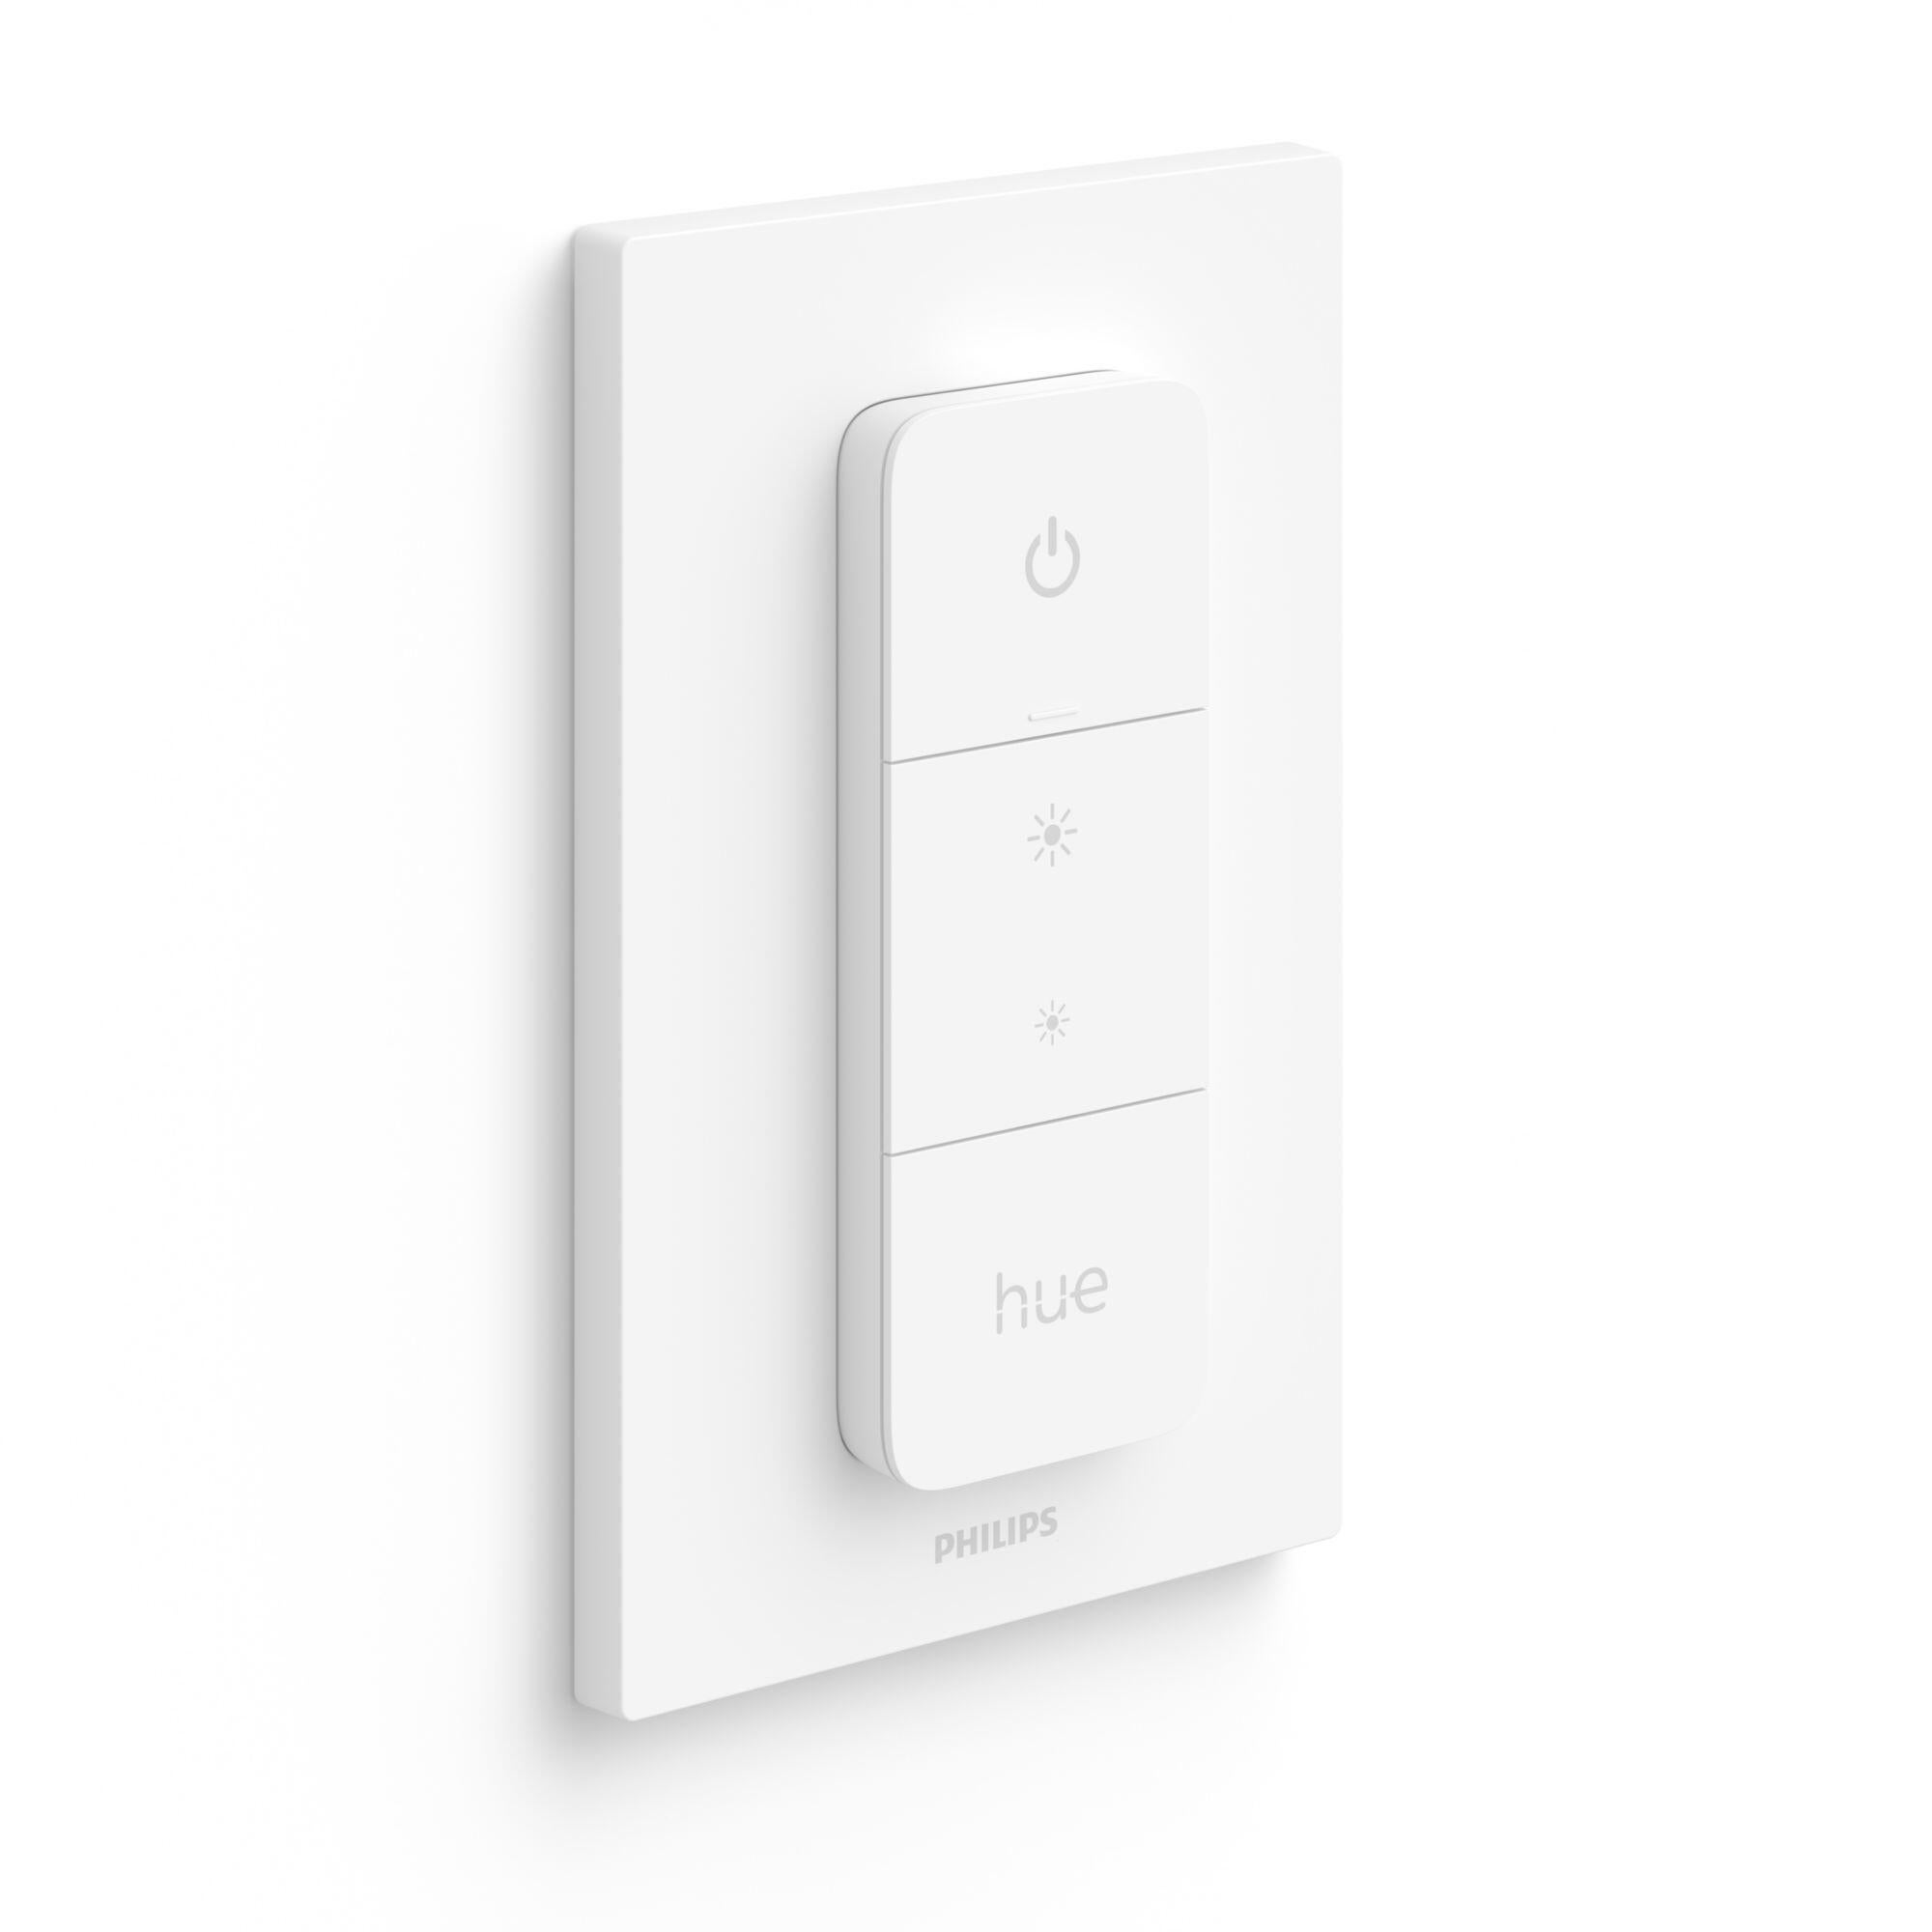 Telecomando PHILIPS HUE Hue Dimmer Switch per lampadina con Accensione e spegnimento luce App Philips Hue: Android 7.0 e versioni successive, iOS 11 e versioni successive - 3